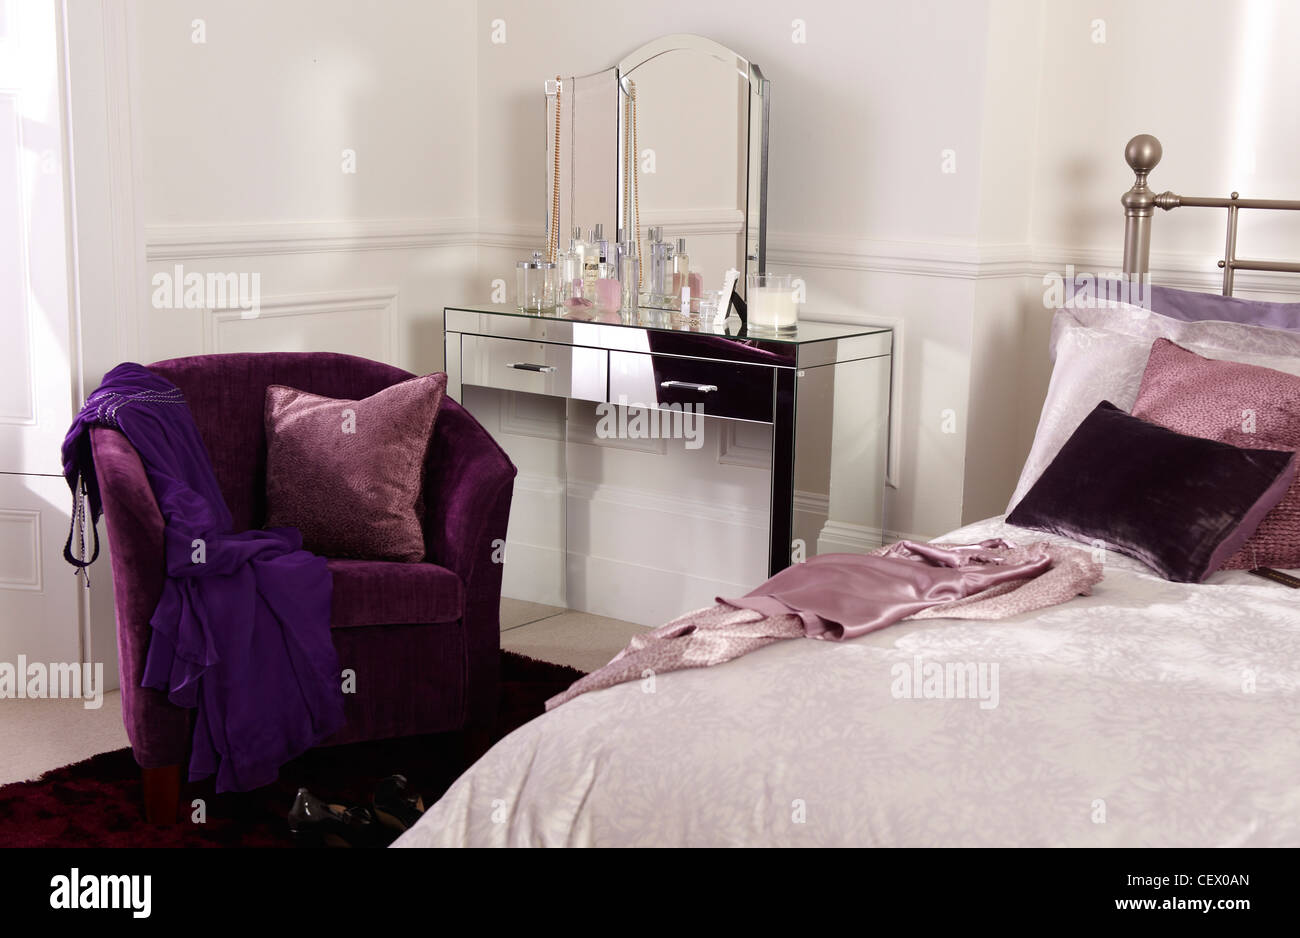 Bedroom interior with purple tones Stock Photo